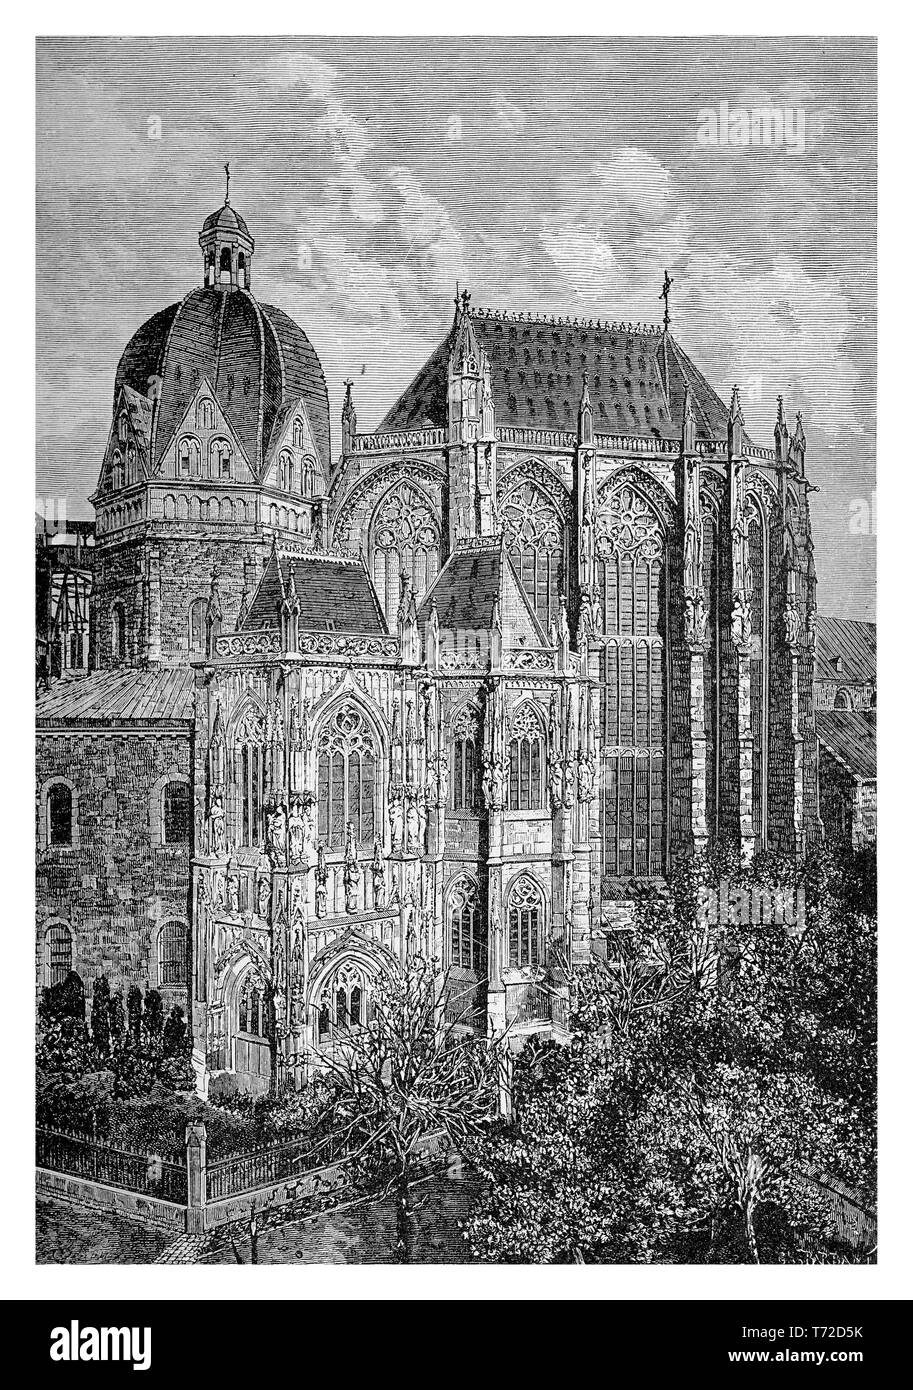 Cattedrale di Aachen della cattedrale di Aix-la-Chapelle; è una chiesa cattolica romana una delle più antiche cattedrali in Europa costruita per ordine dell'imperatore Carlo Magno nel VIII secolo in stile gotico. Foto Stock